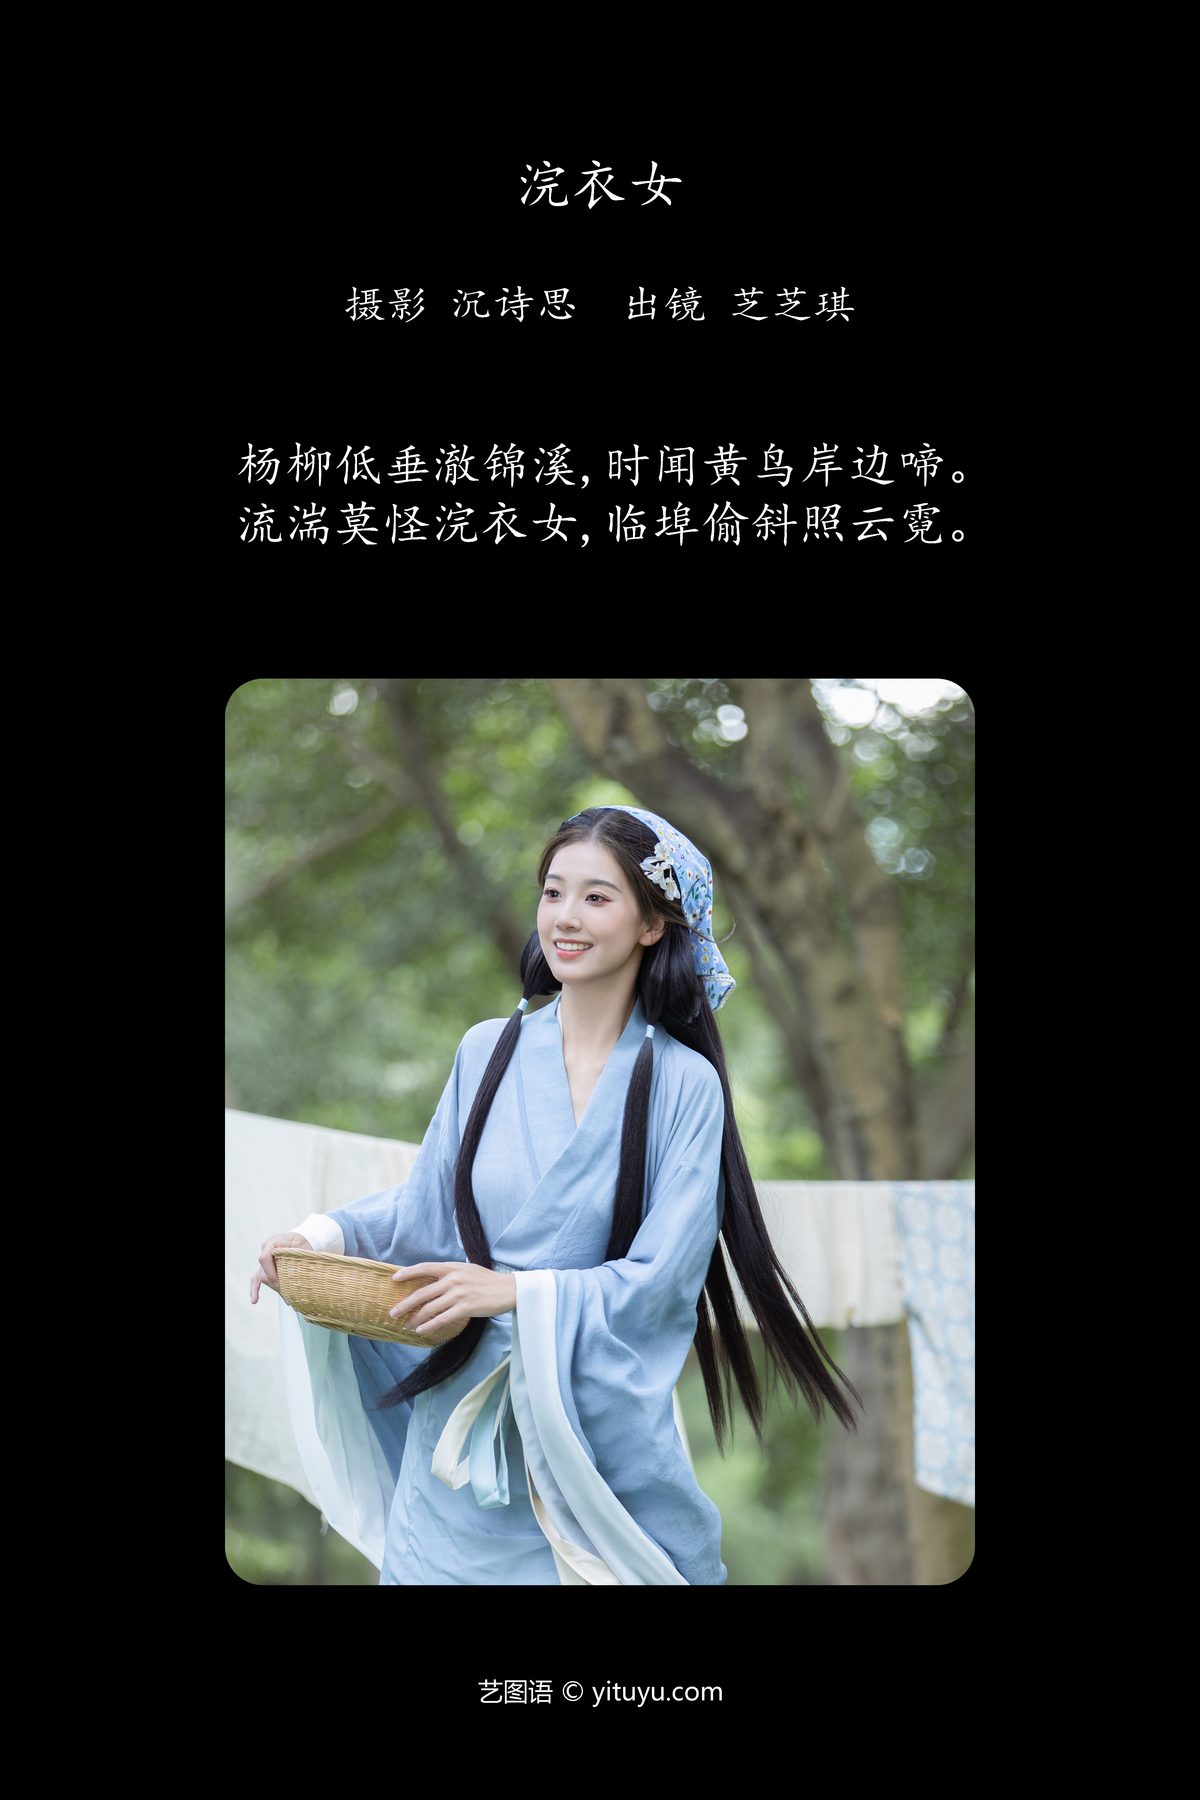 YiTuYu艺图语 Vol 5797 Zhi Zhi Qi 0002 6334556833.jpg